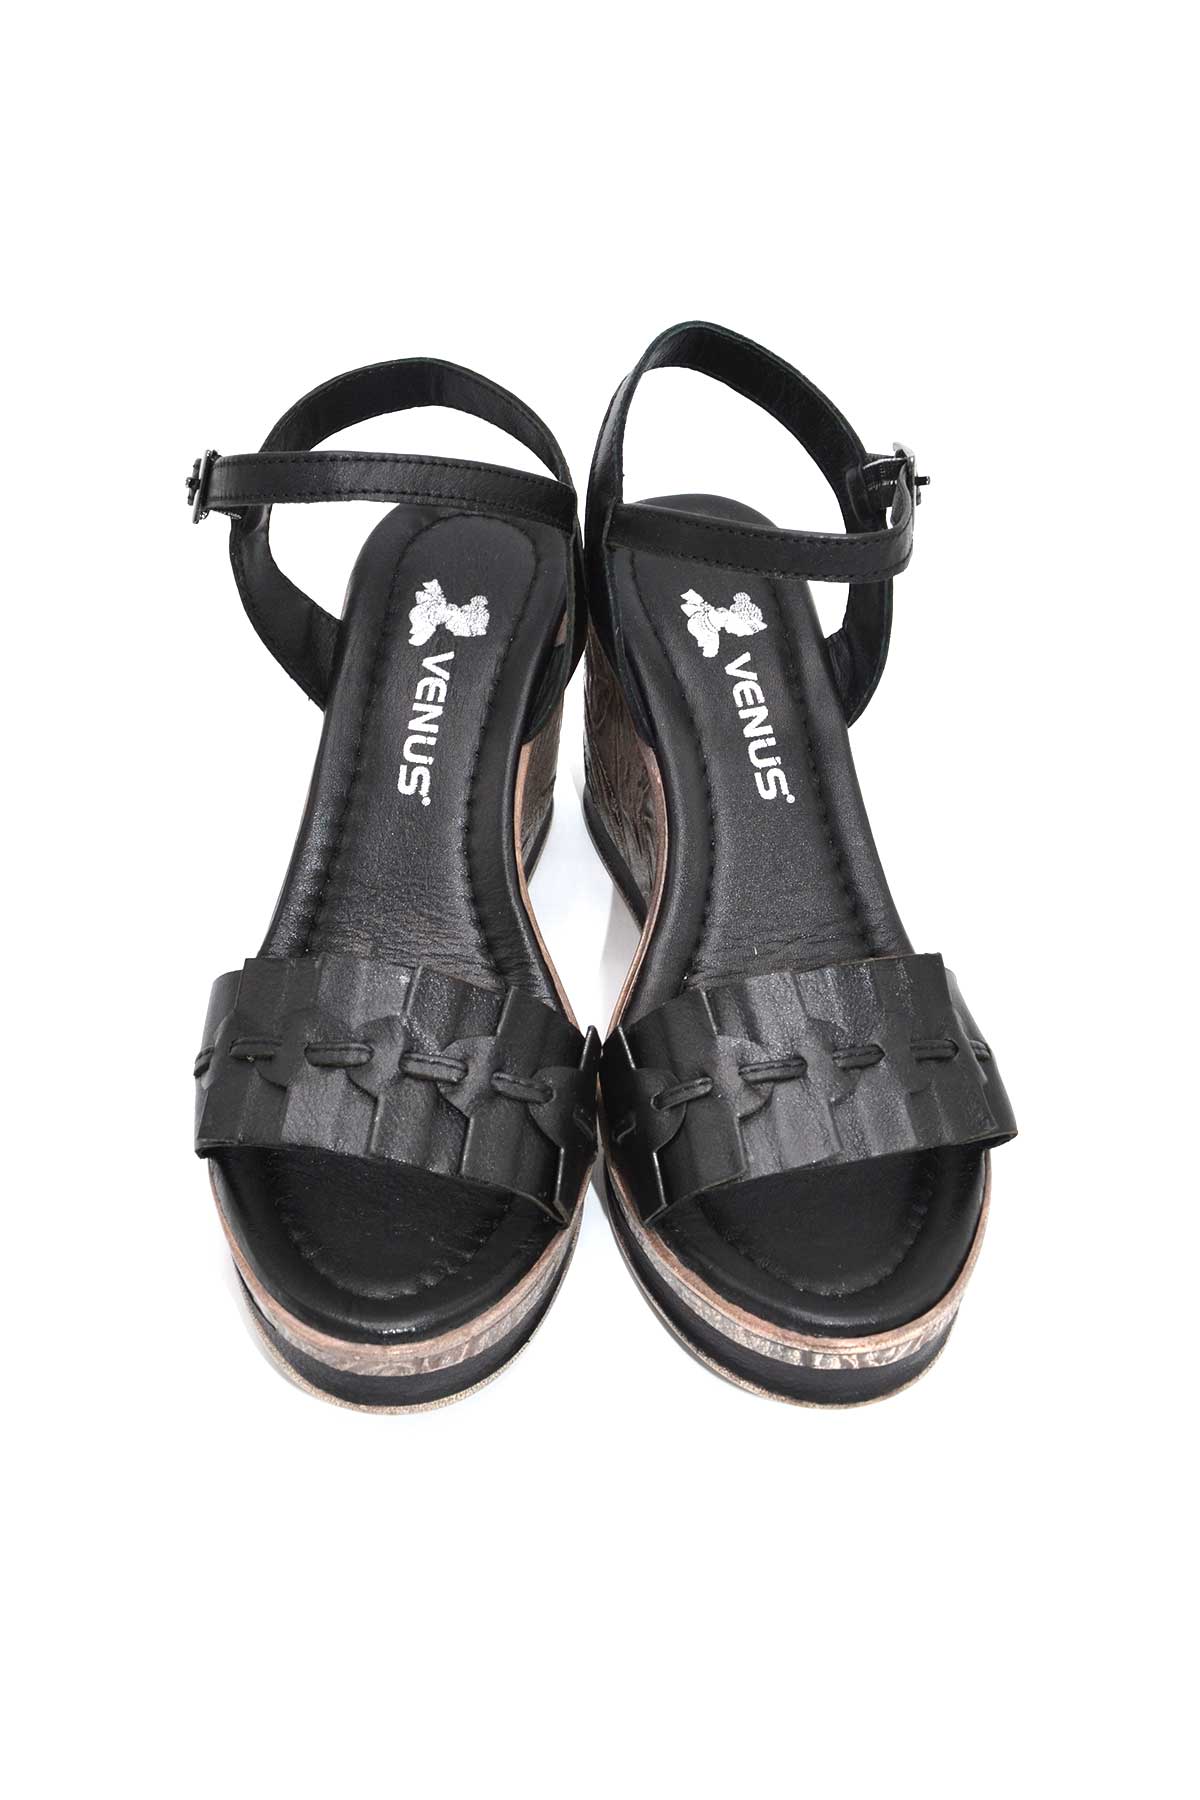 Kadın Dolgu Topuk Deri Sandalet Siyah 2015715Y - Thumbnail